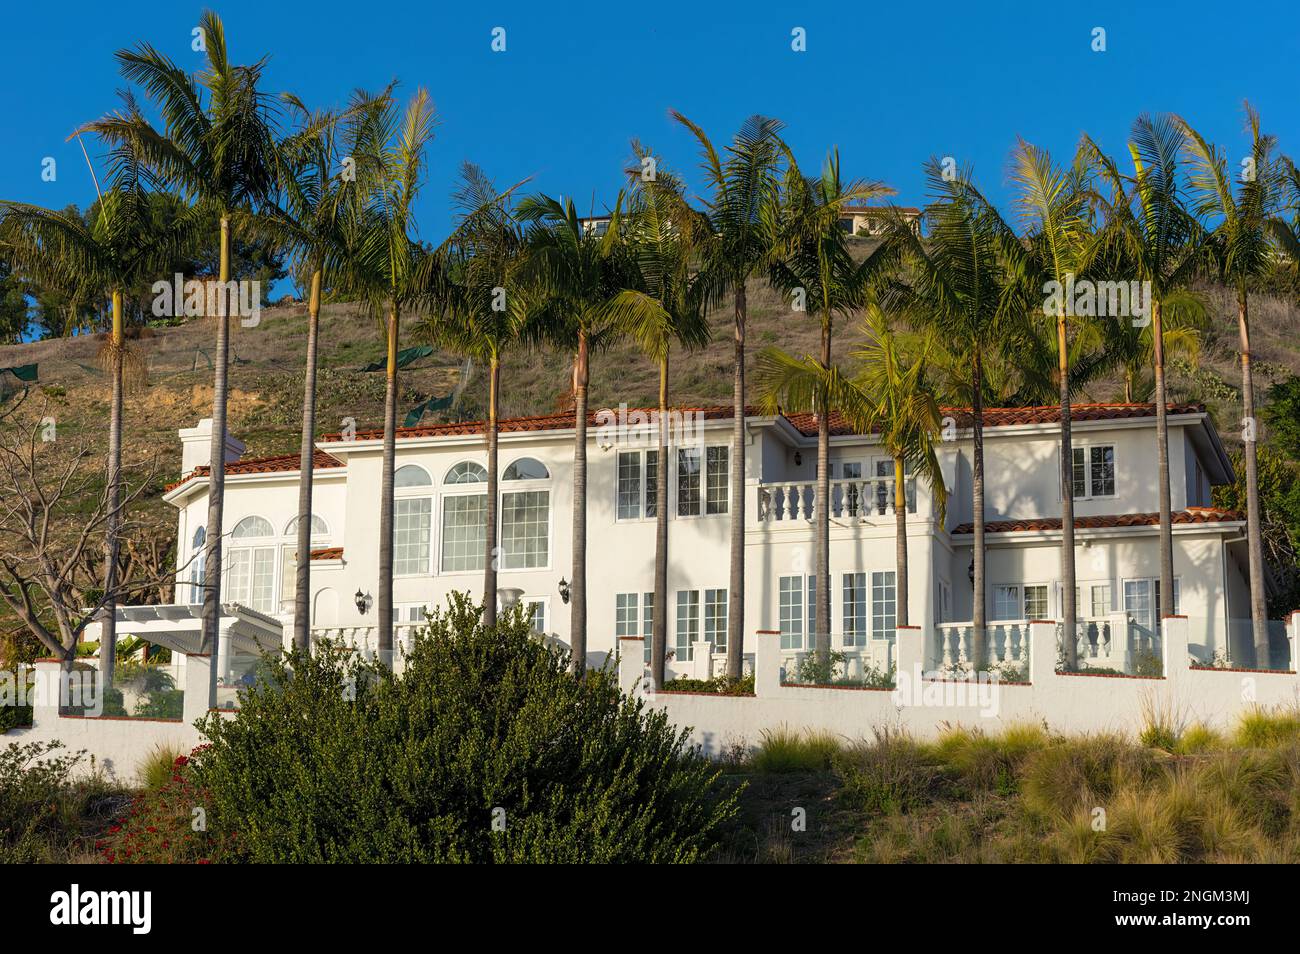 Palos Verdes Halbinsel, Kalifornien, USA - 28. Januar 2023: High-End-Haus auf einem Hügel mit einer Reihe von Palmen davor, wie in späten Tagen gezeigt Stockfoto